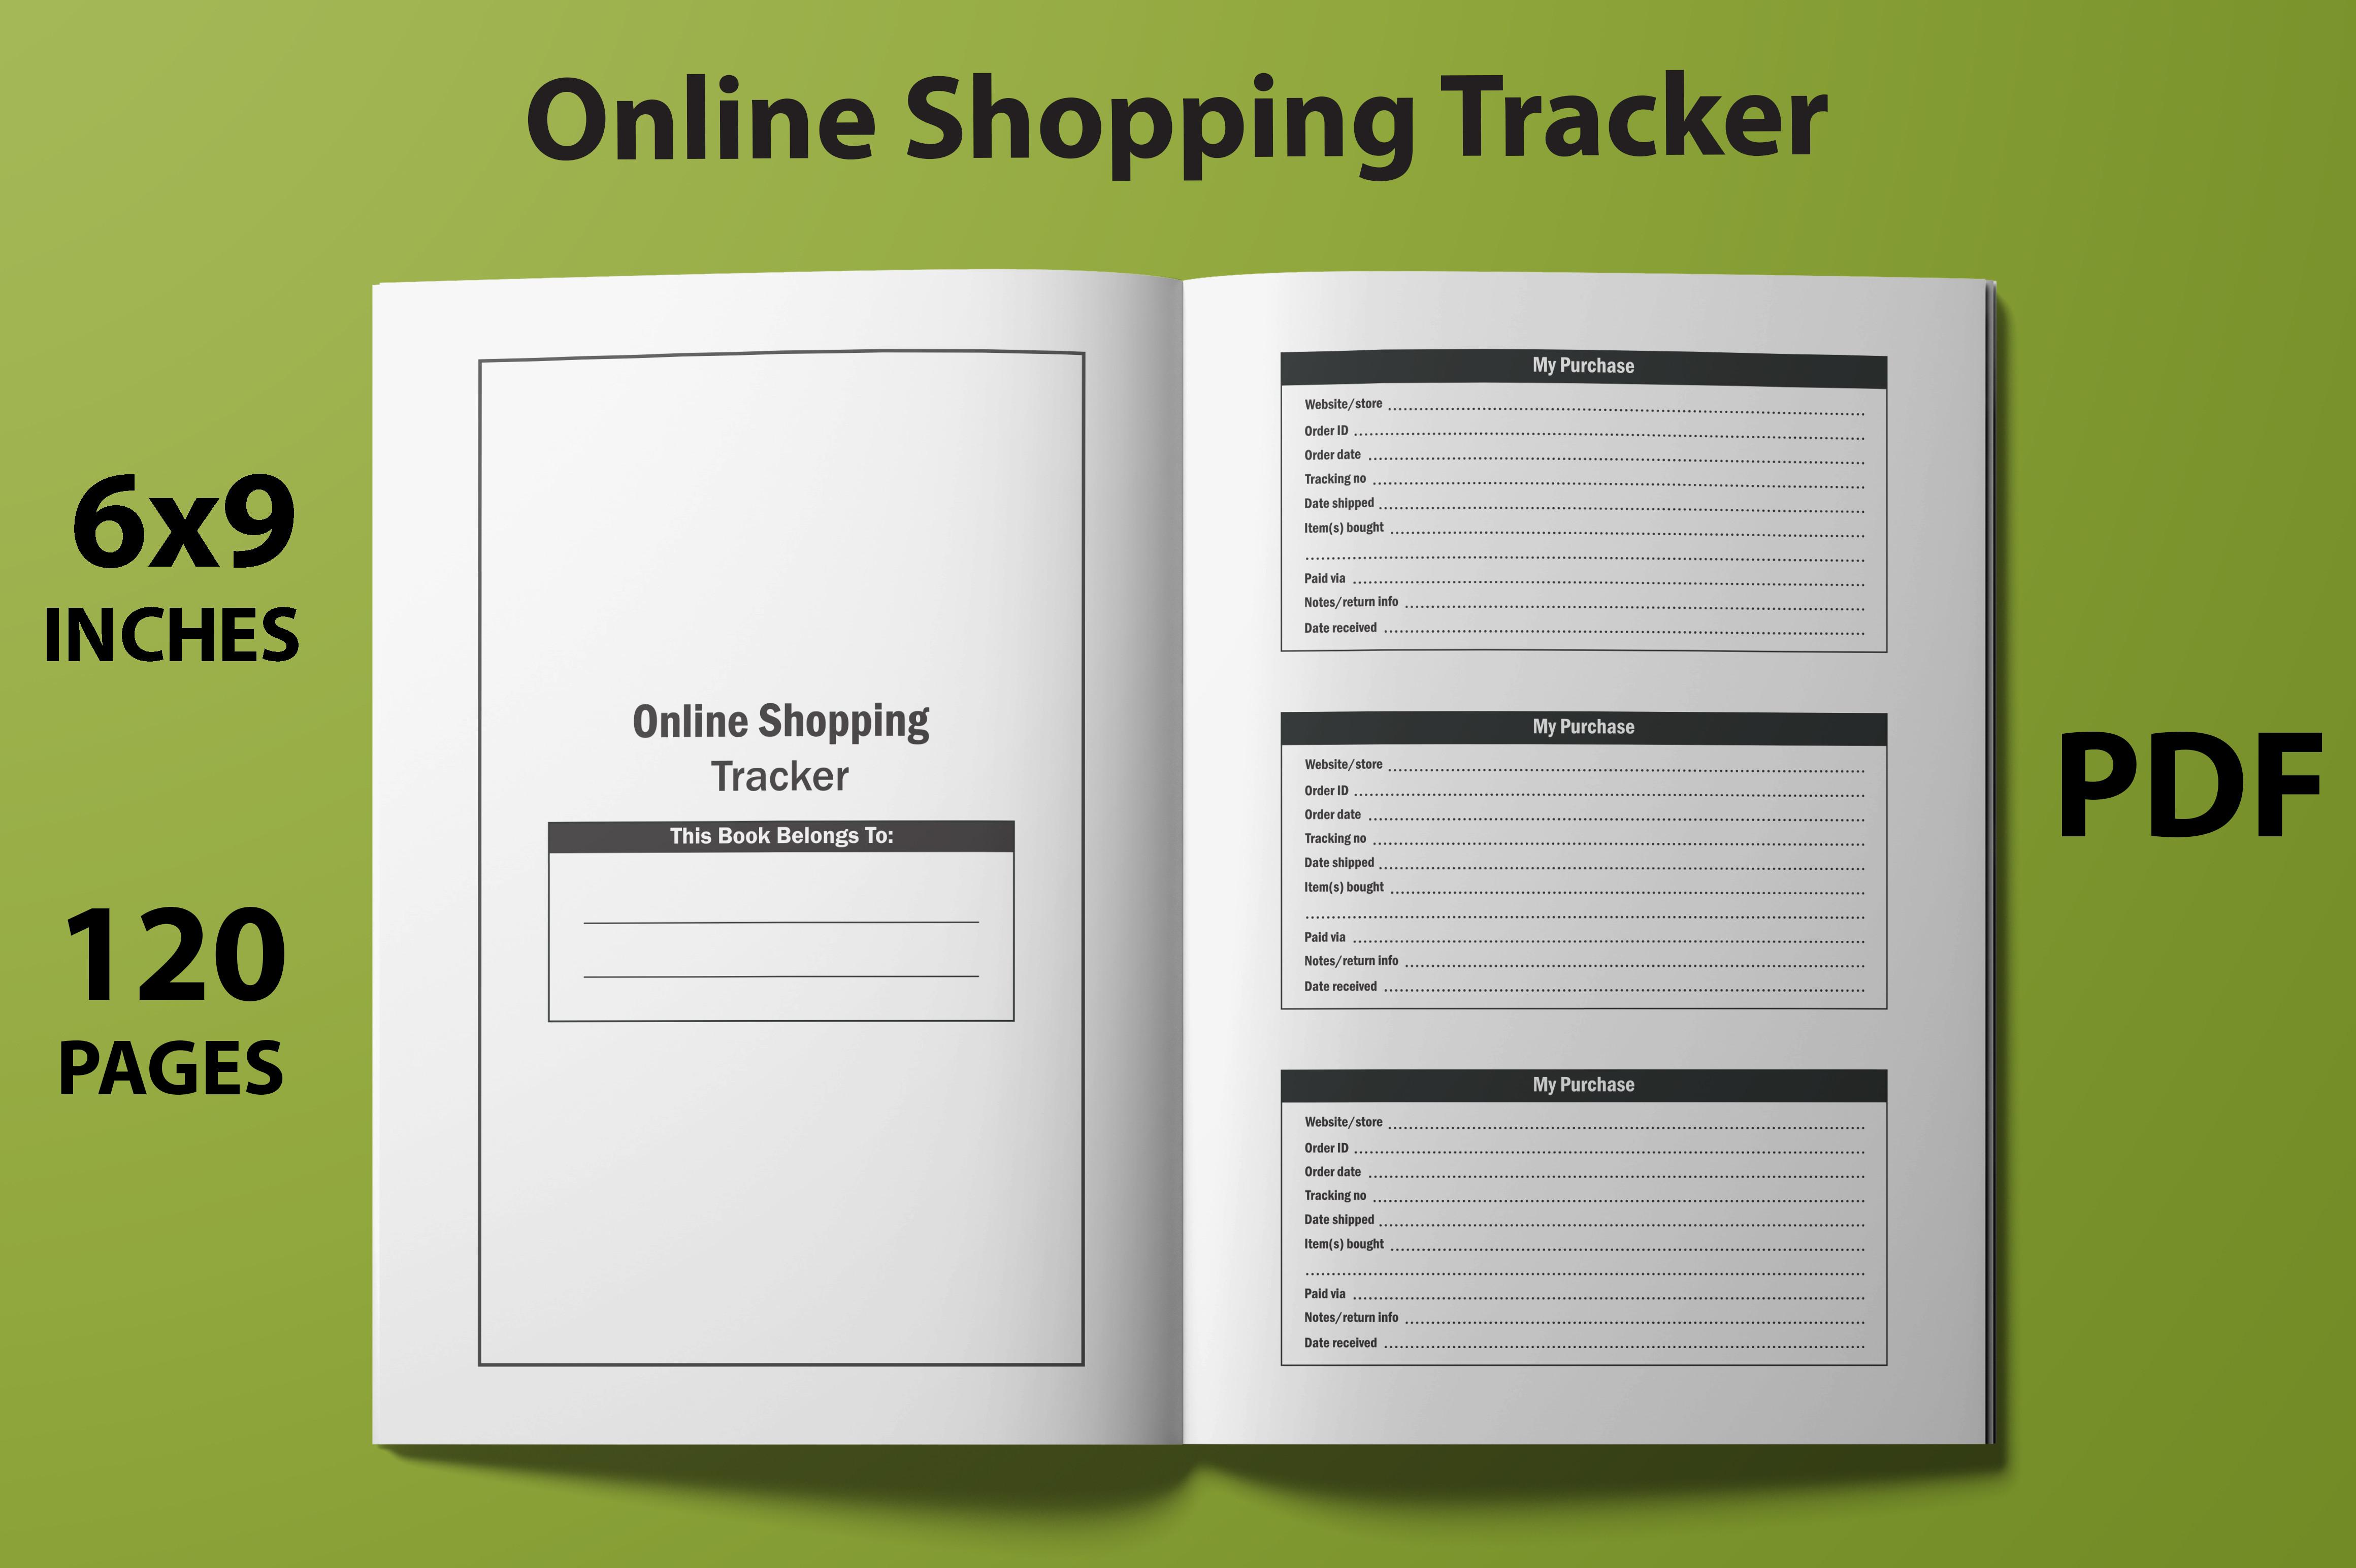 KDP Online Shopping Tracker